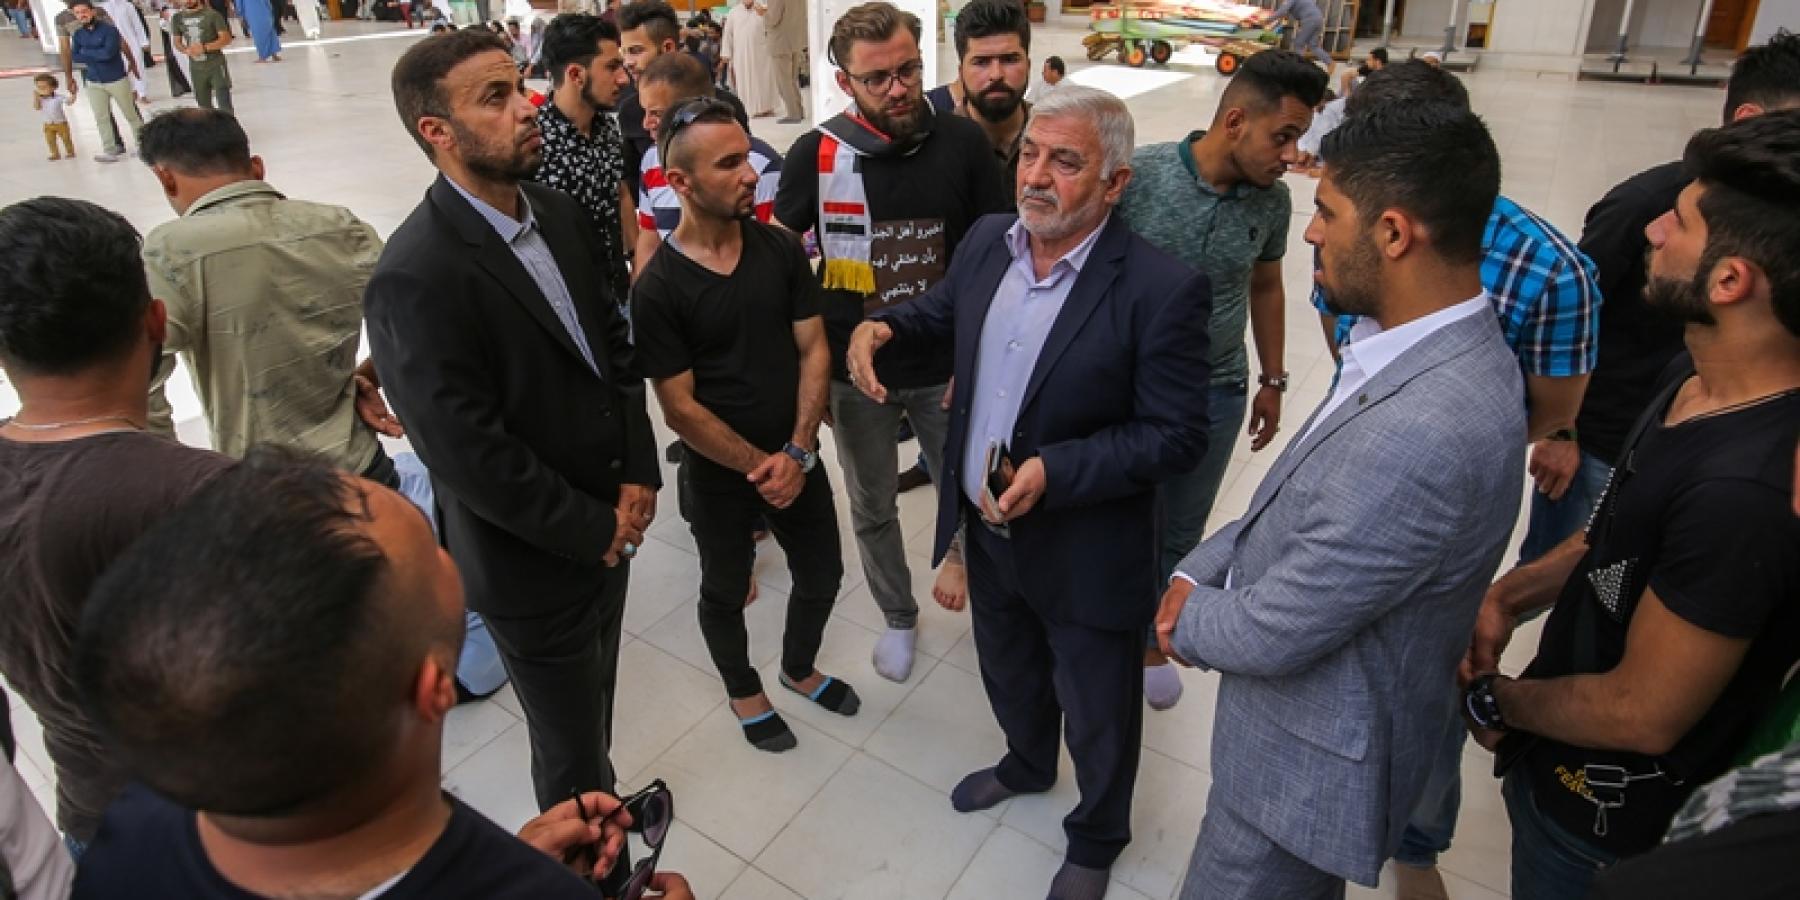 وفد من أساتذة وطلبة جامعة الموصل يتشرفون بزيارة مرقد أمير المؤمنين (عليه السلام)